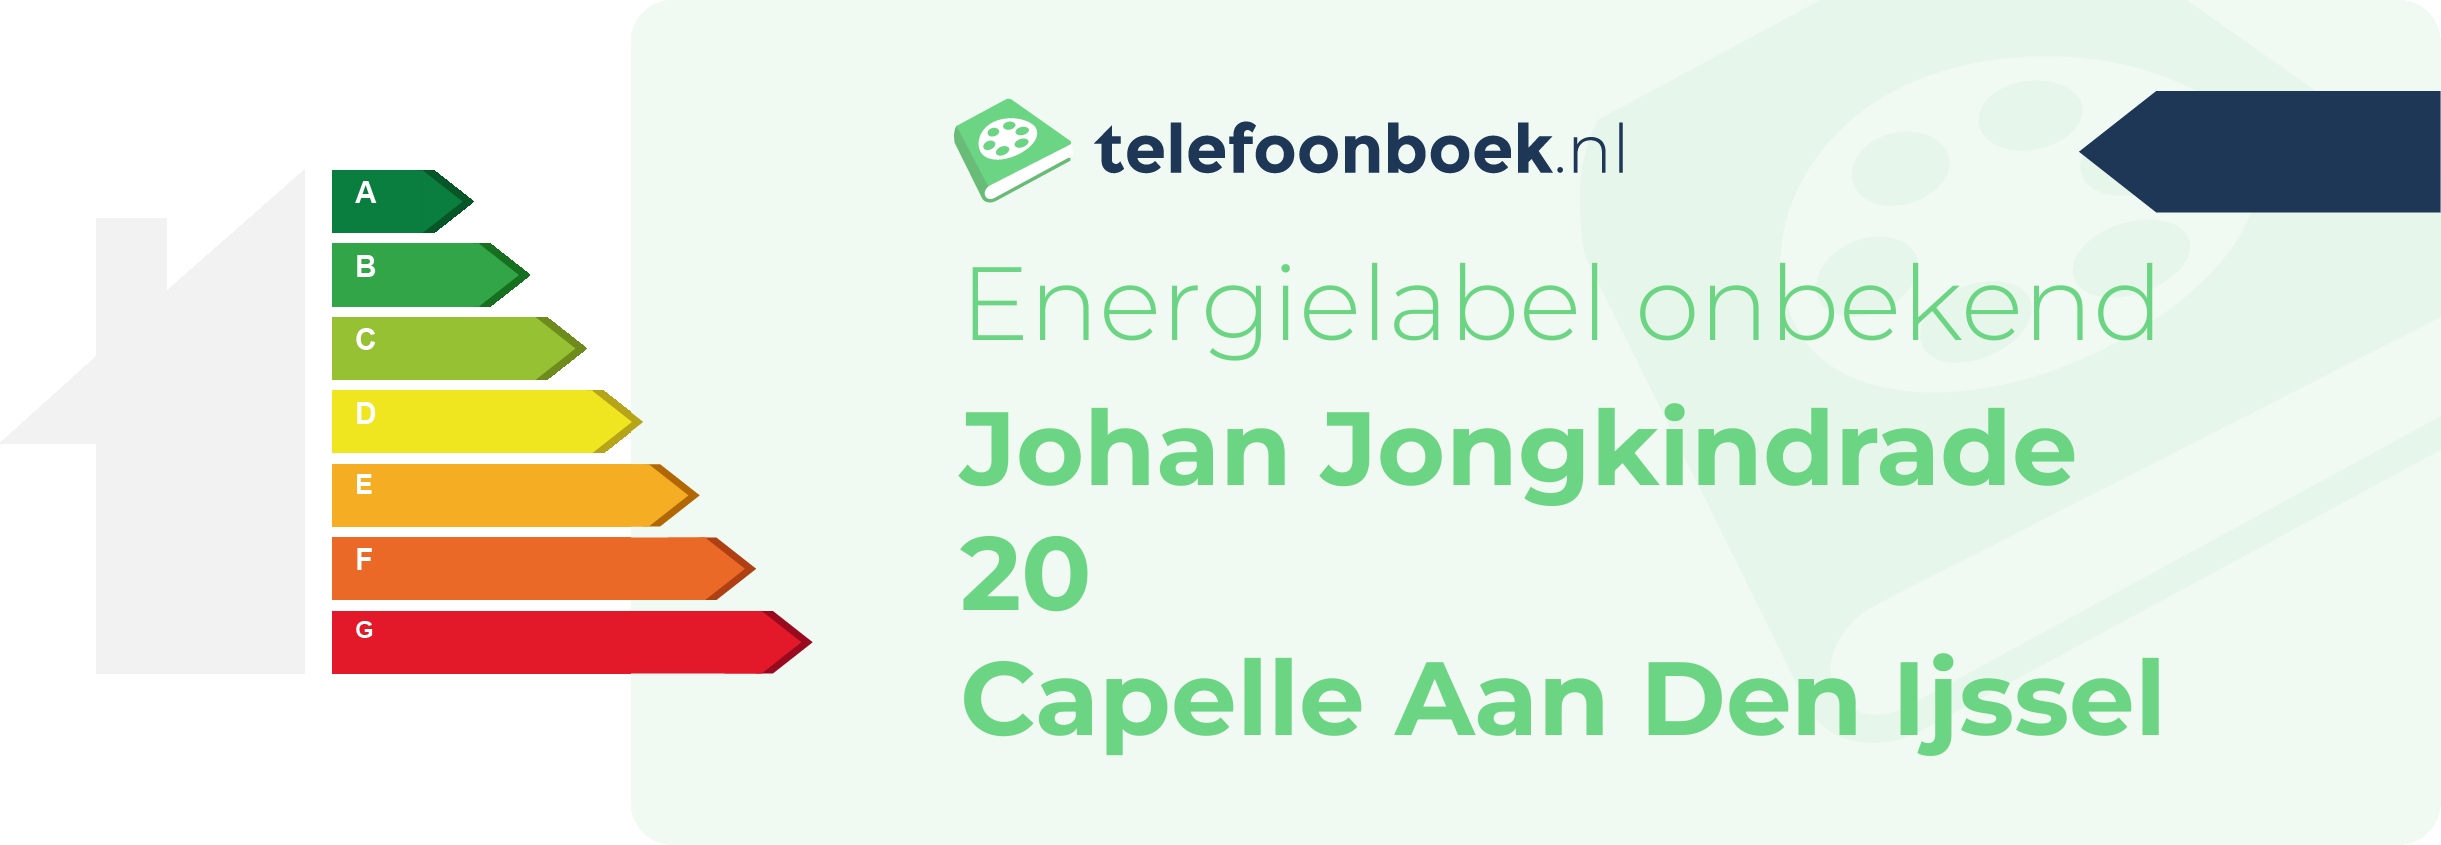 Energielabel Johan Jongkindrade 20 Capelle Aan Den Ijssel